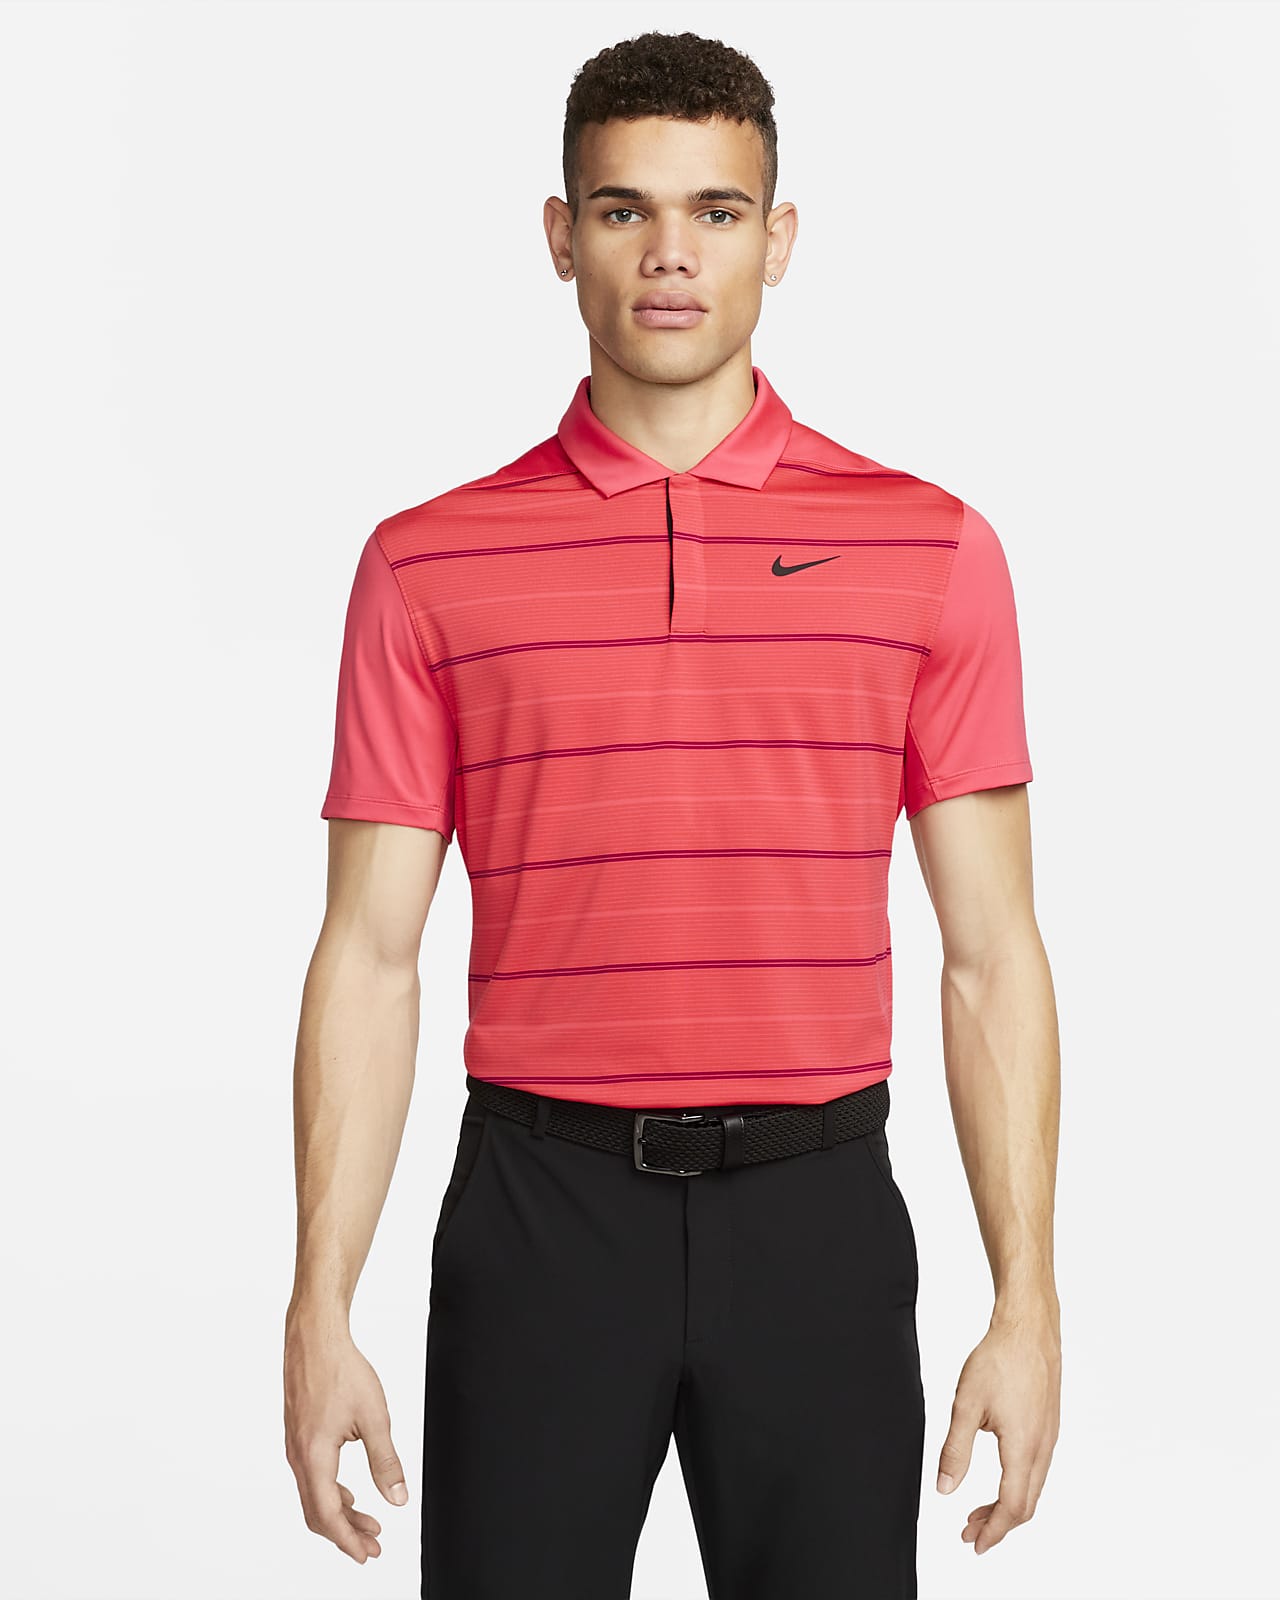 Præsident Forbipasserende gavnlig Nike Dri-FIT Tiger Woods Men's Striped Golf Polo. Nike.com